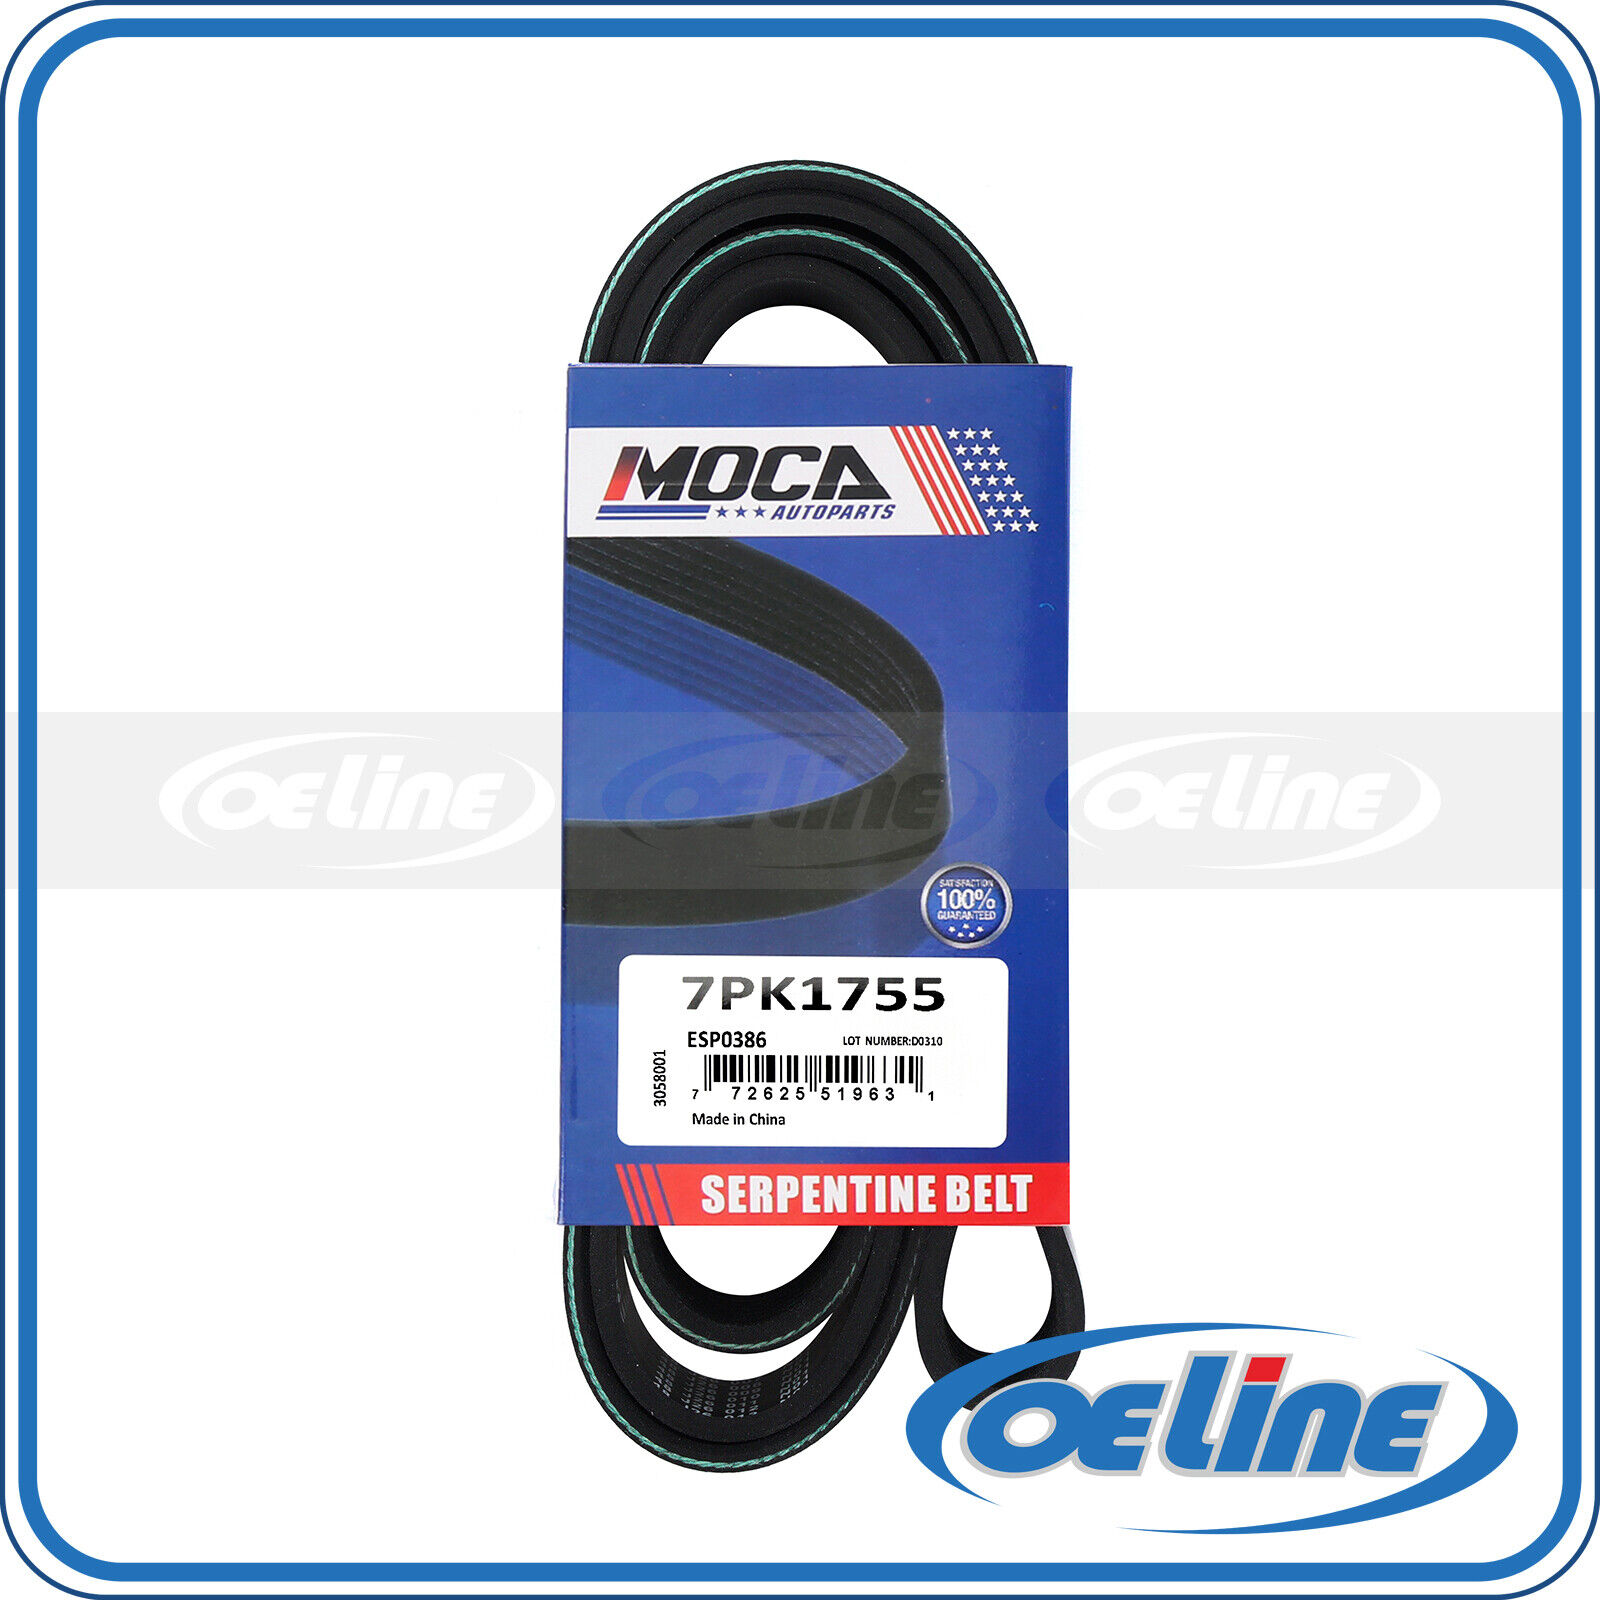 EPDM Serpentine Belt for 04-08 Acura TSX 2.4L & 07-09 Honda CR-V 2.4L 7PK1755